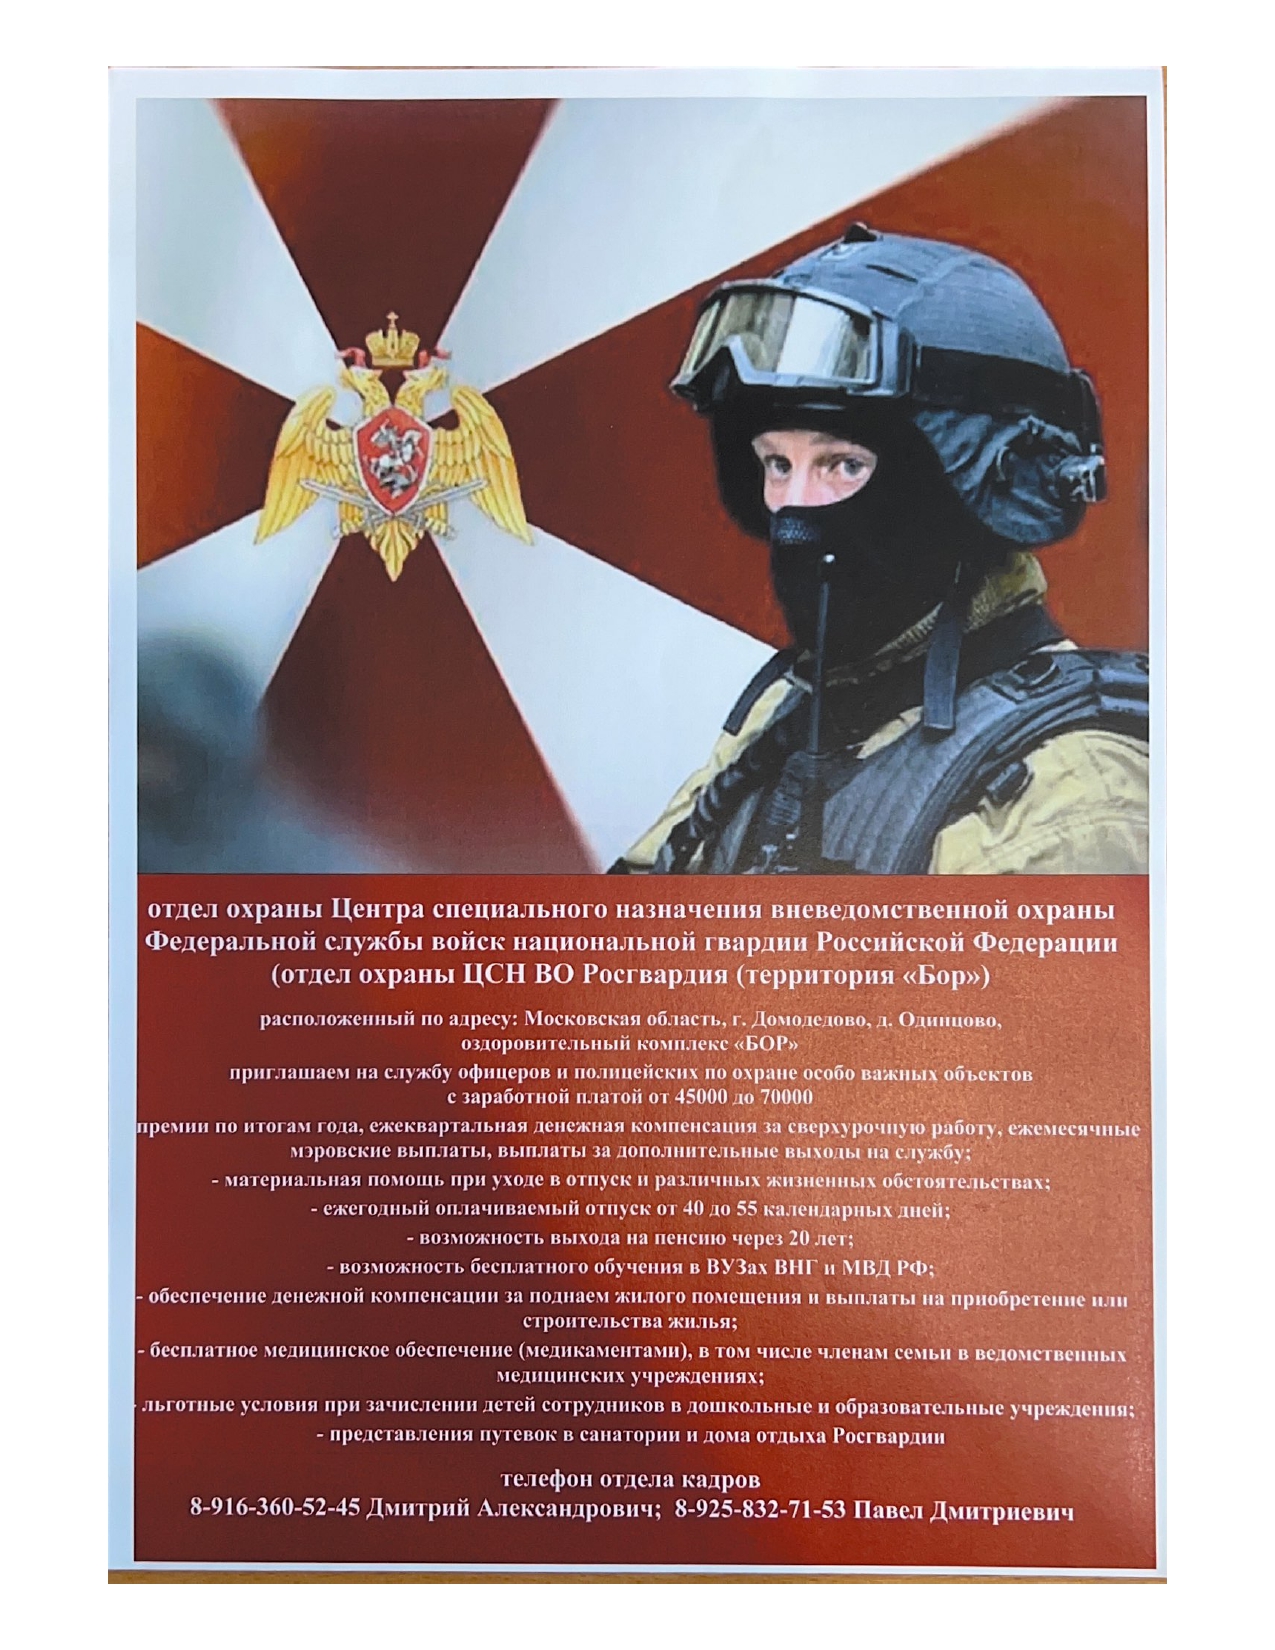 Центр специального назначения вневедомственной охраны Федеральной службы войск национальной гвардии Российской Федерации приглашает на работу